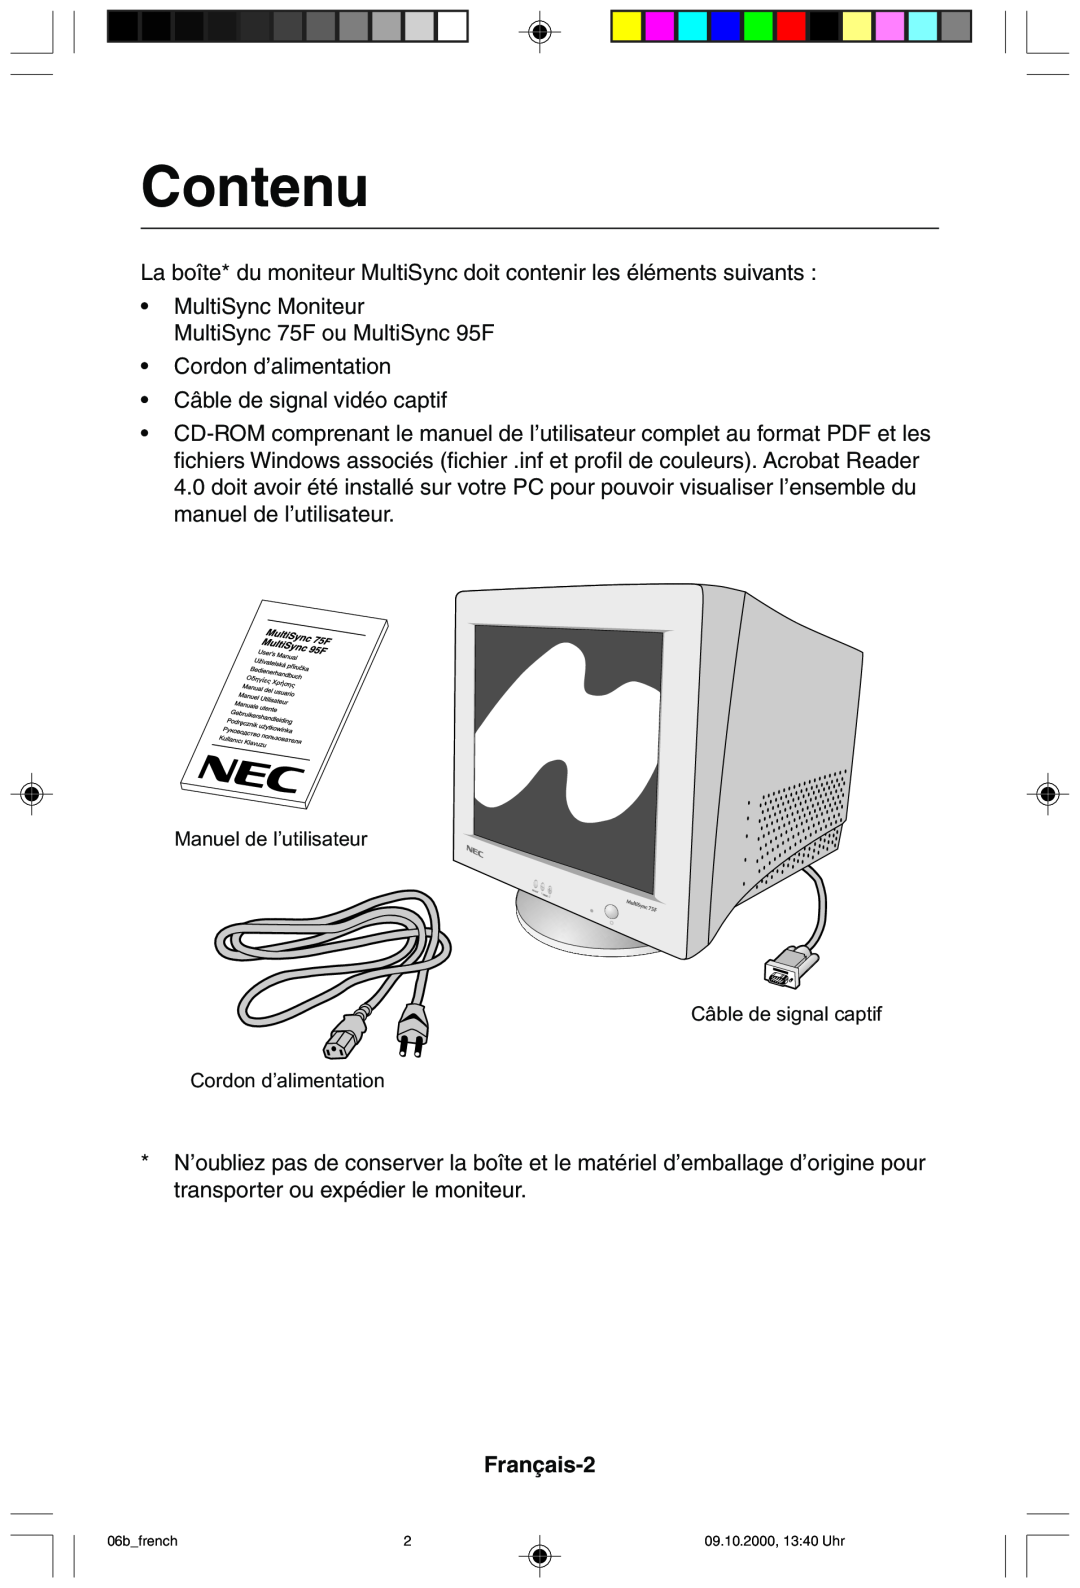 NEC 95F user manual Contenu, Français-2 